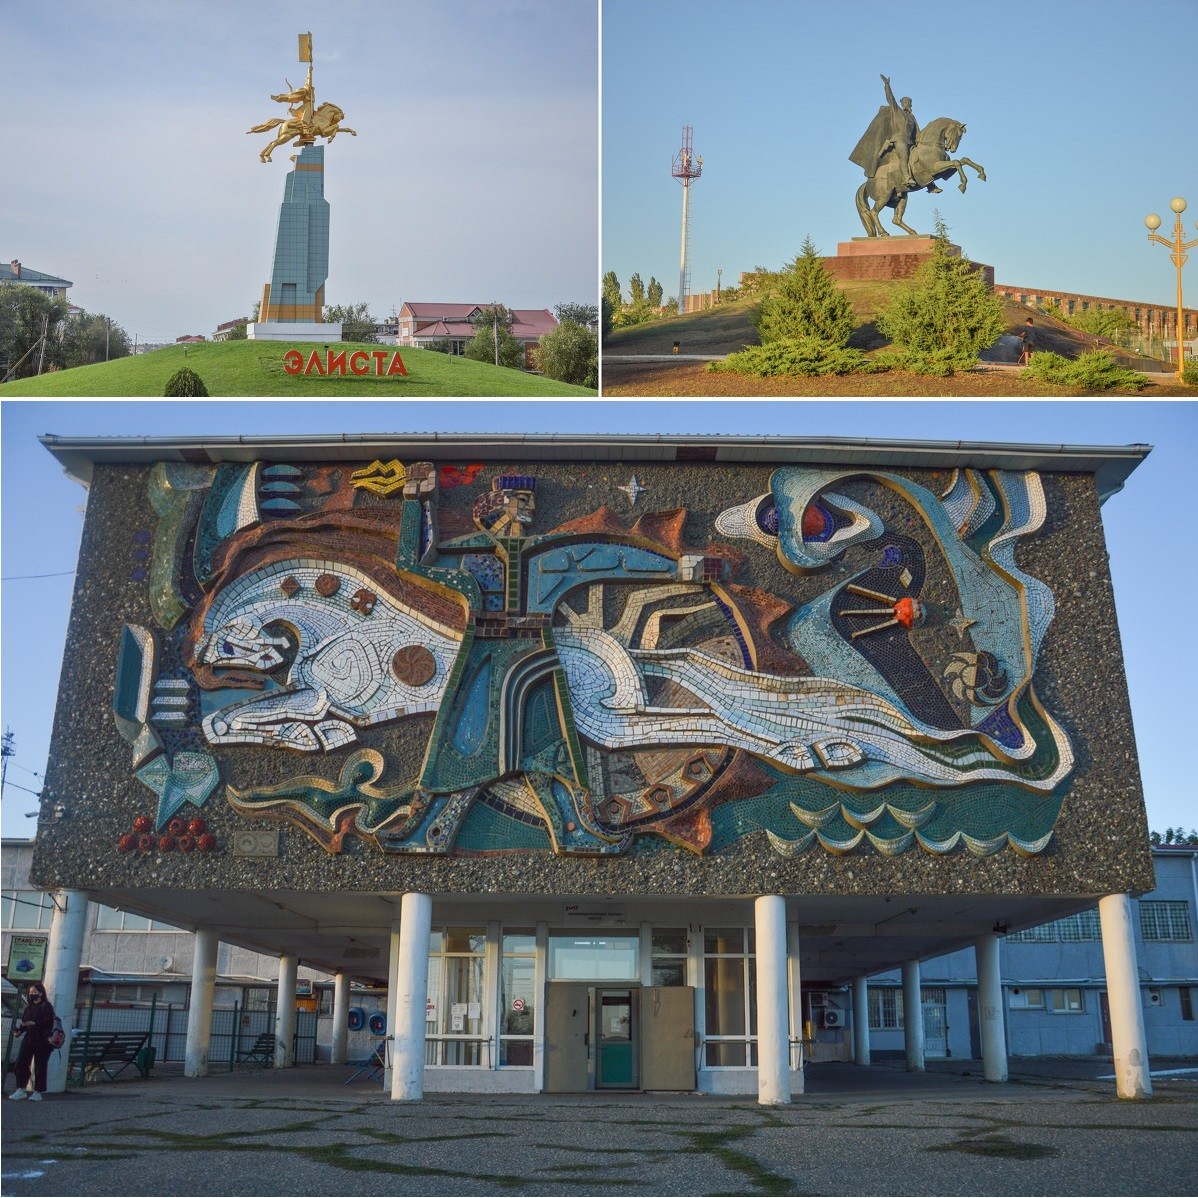 Le cheval, symbole du nomadisme, est omniprésent dans Elista, qu'il s'agisse de statues ou d'une sublime mosaïque soviétique sur la façade de la gare ferroviaire.